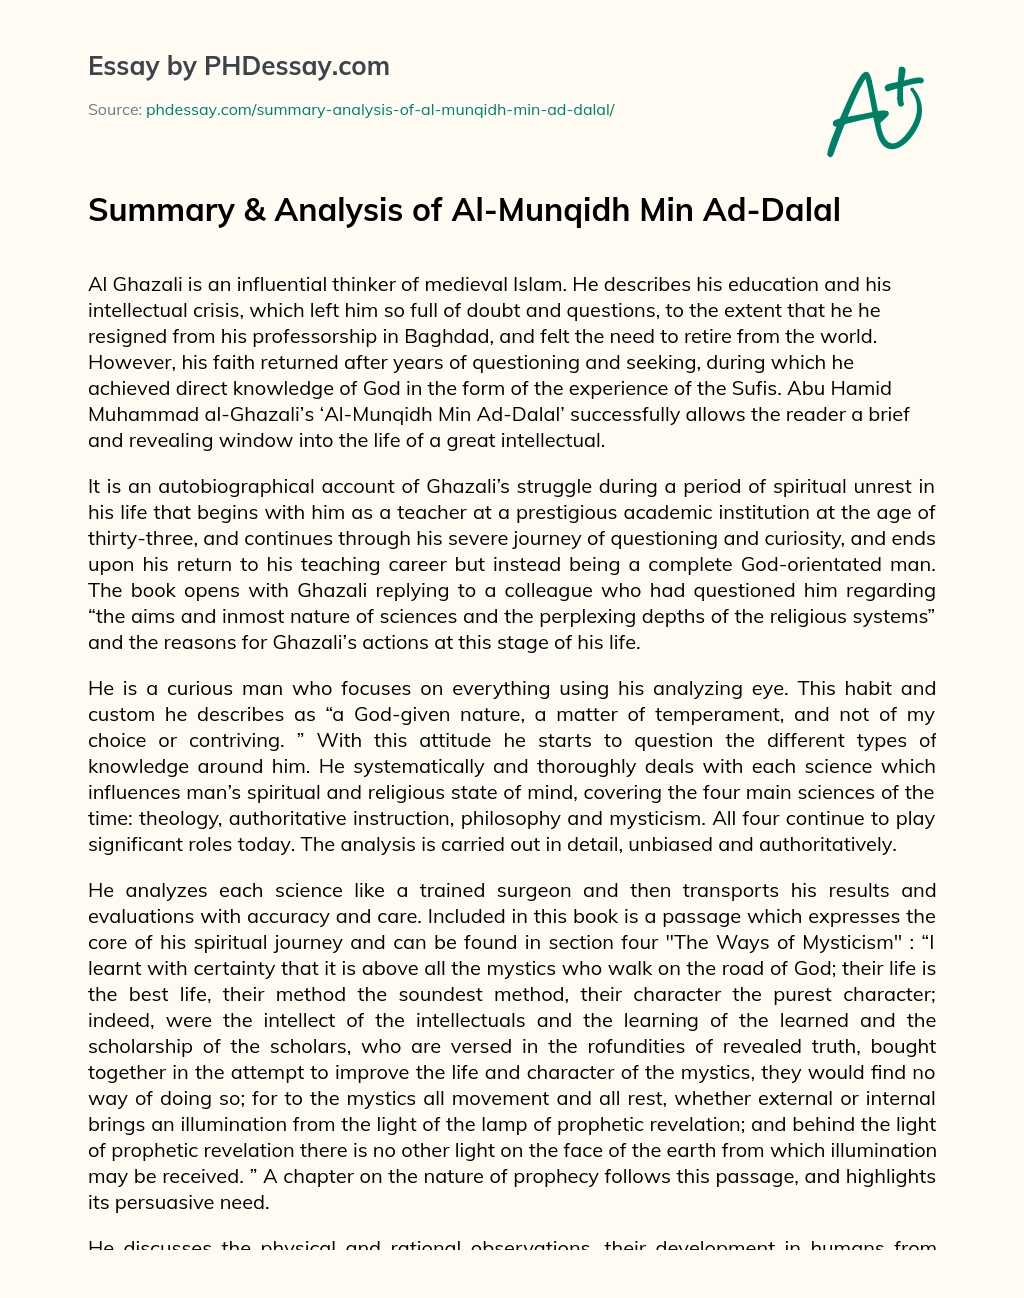 Summary & Analysis of Al-Munqidh Min Ad-Dalal essay